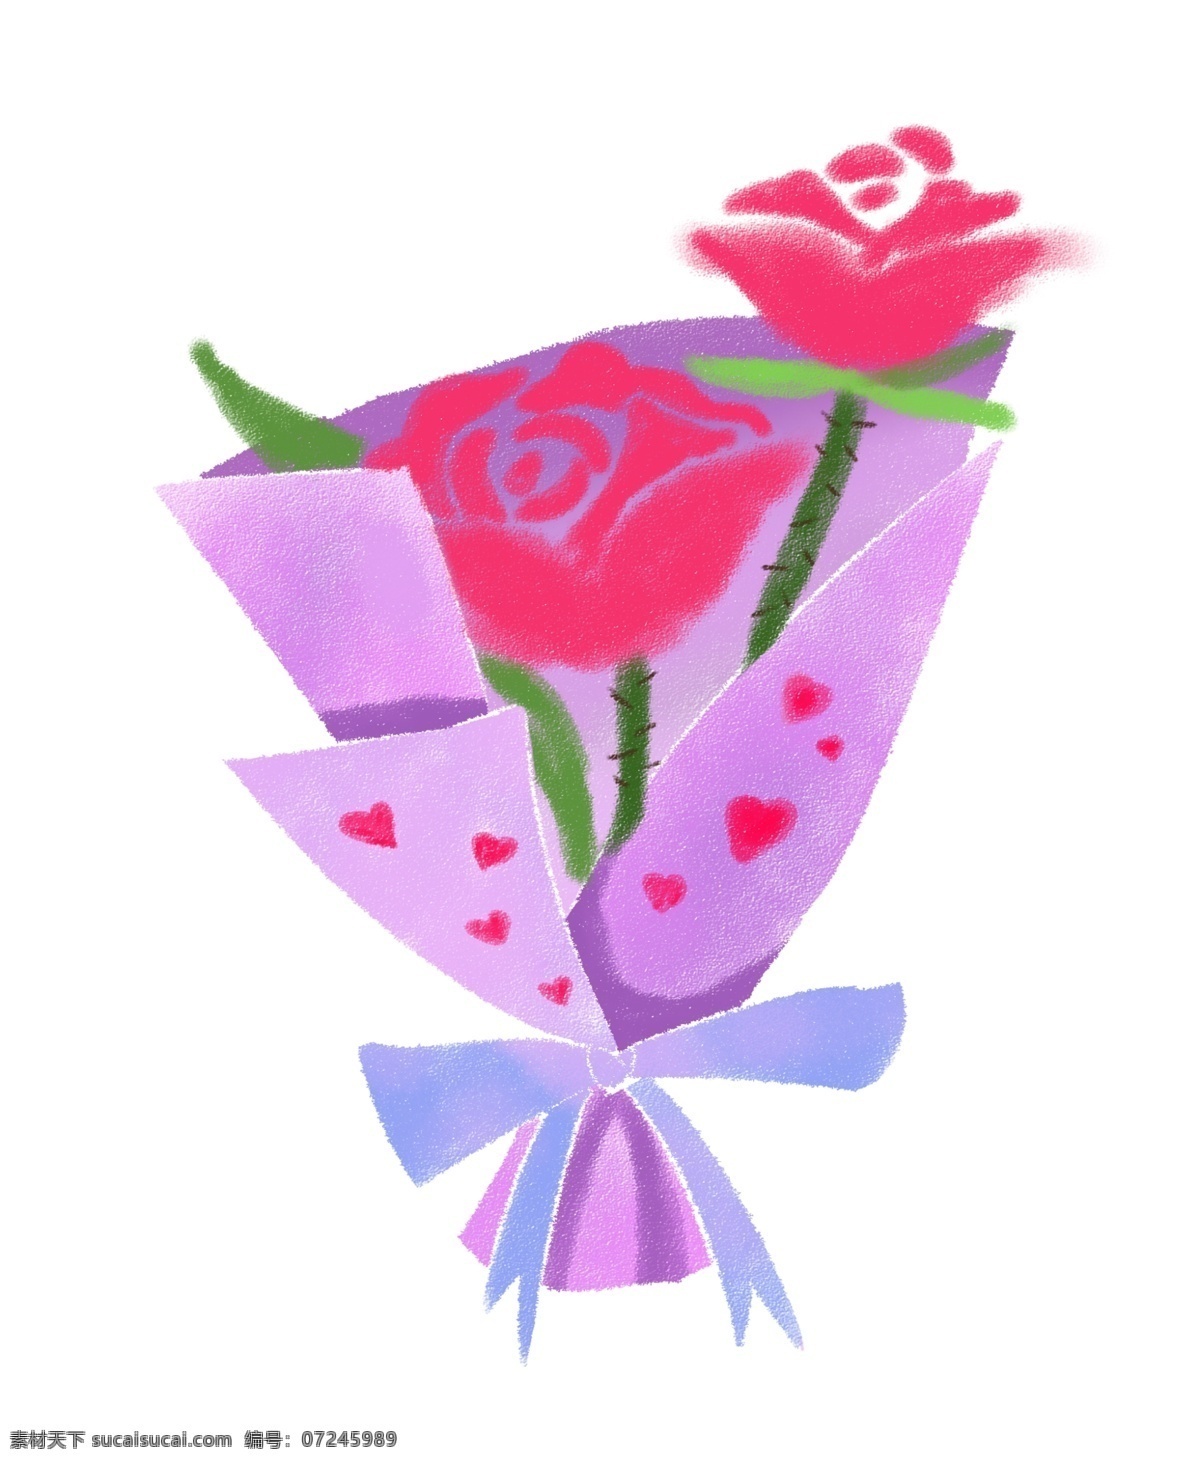 束 玫瑰花 花束 插画 一束玫瑰花 漂亮的玫瑰花 红色玫瑰花 情人节玫瑰花 紫粉色包纸 紫色蝴蝶结